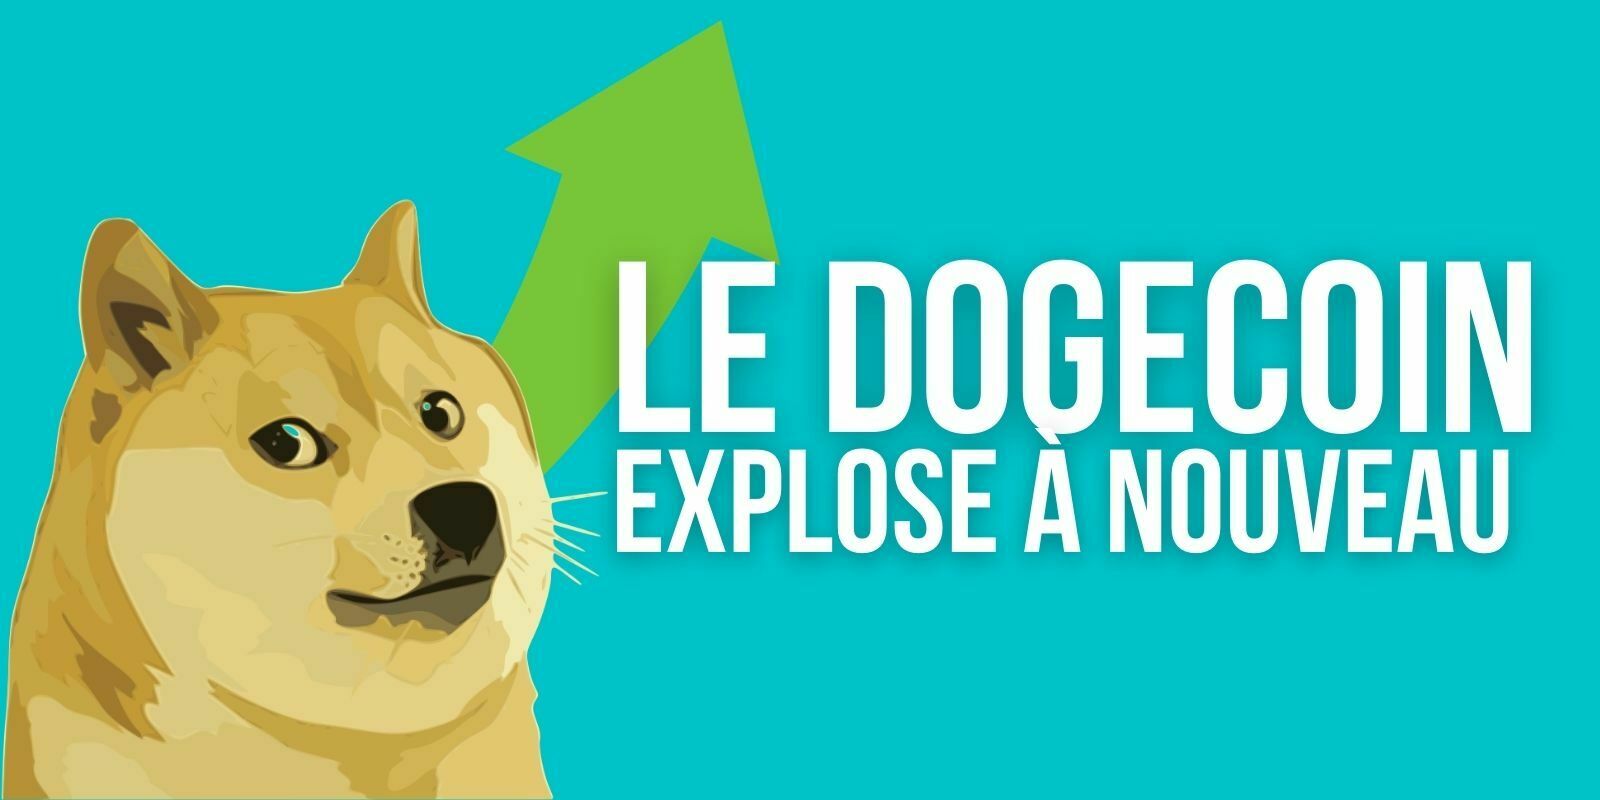 Le Dogecoin (DOGE) atteint un nouveau record absolu et devient la 8e cryptomonnaie la plus capitalisée